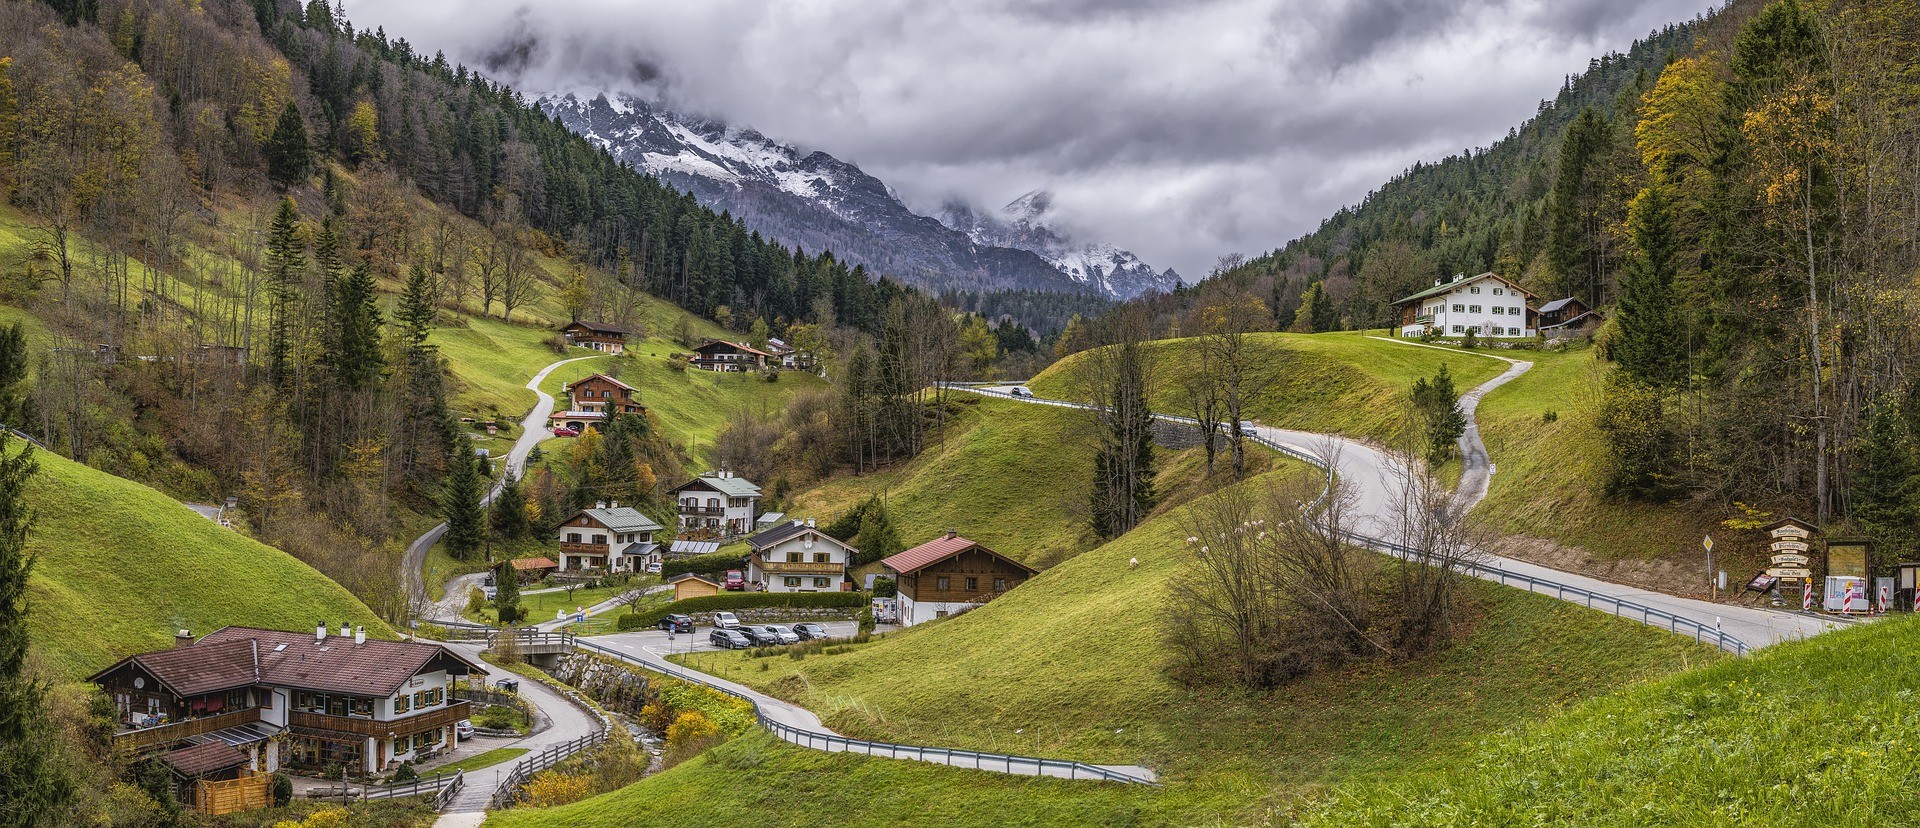 Ein Dorf in den Alpen, in einem kleinen Tal. Zu sehen sind rund ein Dutzend Häuser und kleinere Straßen.